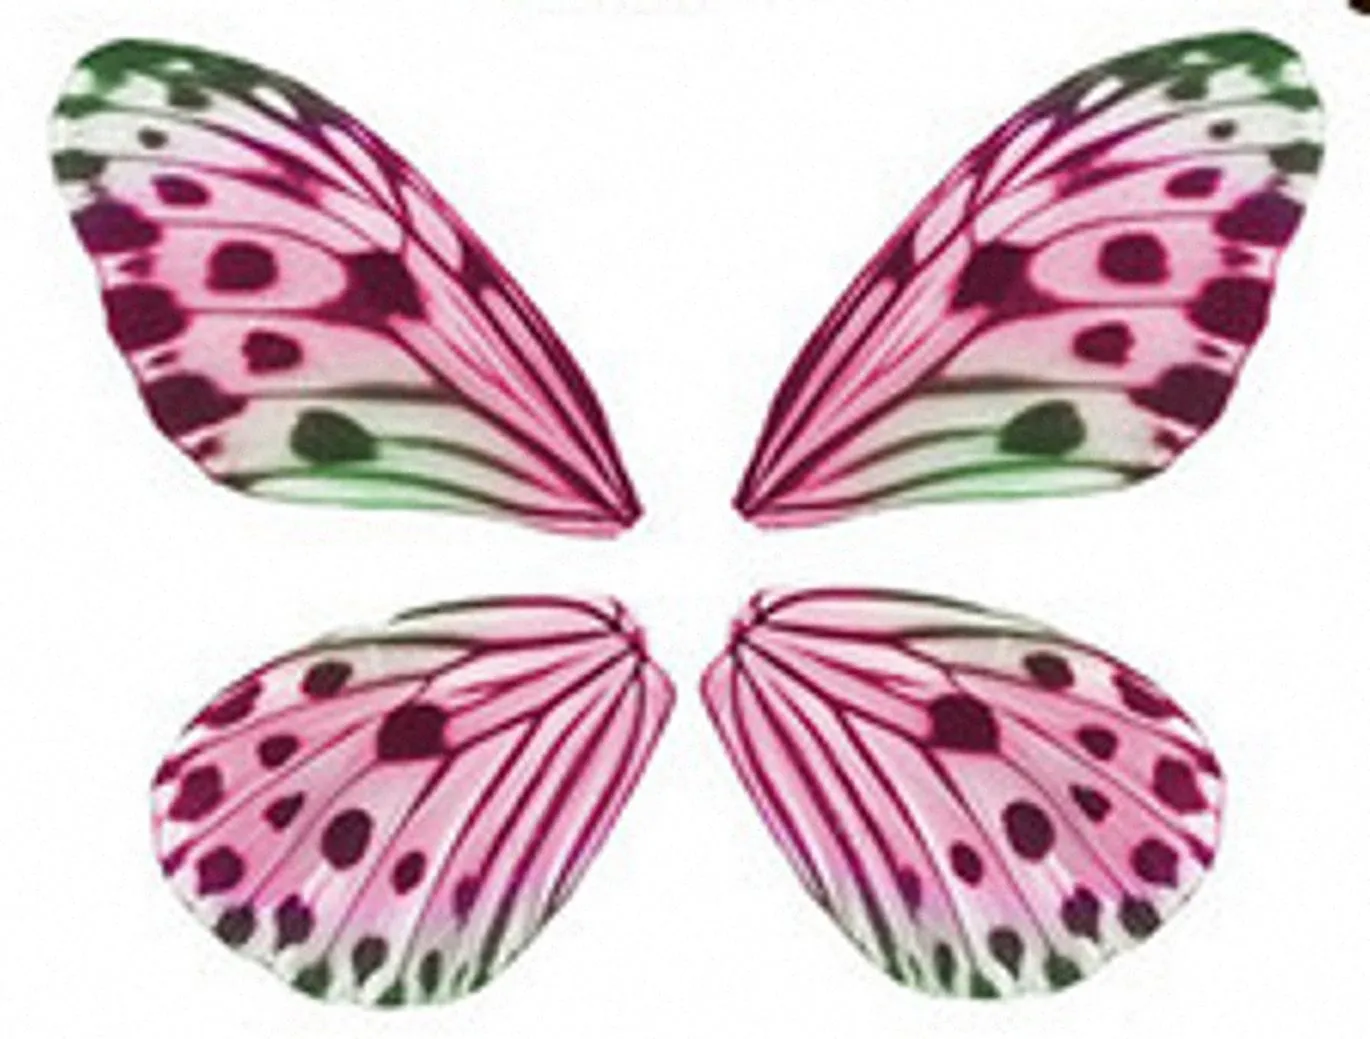 alas de mariposa de papel - Buscar con Google  Mariposas para colorear,  Mariposas para imprimir, Moldes de mariposas